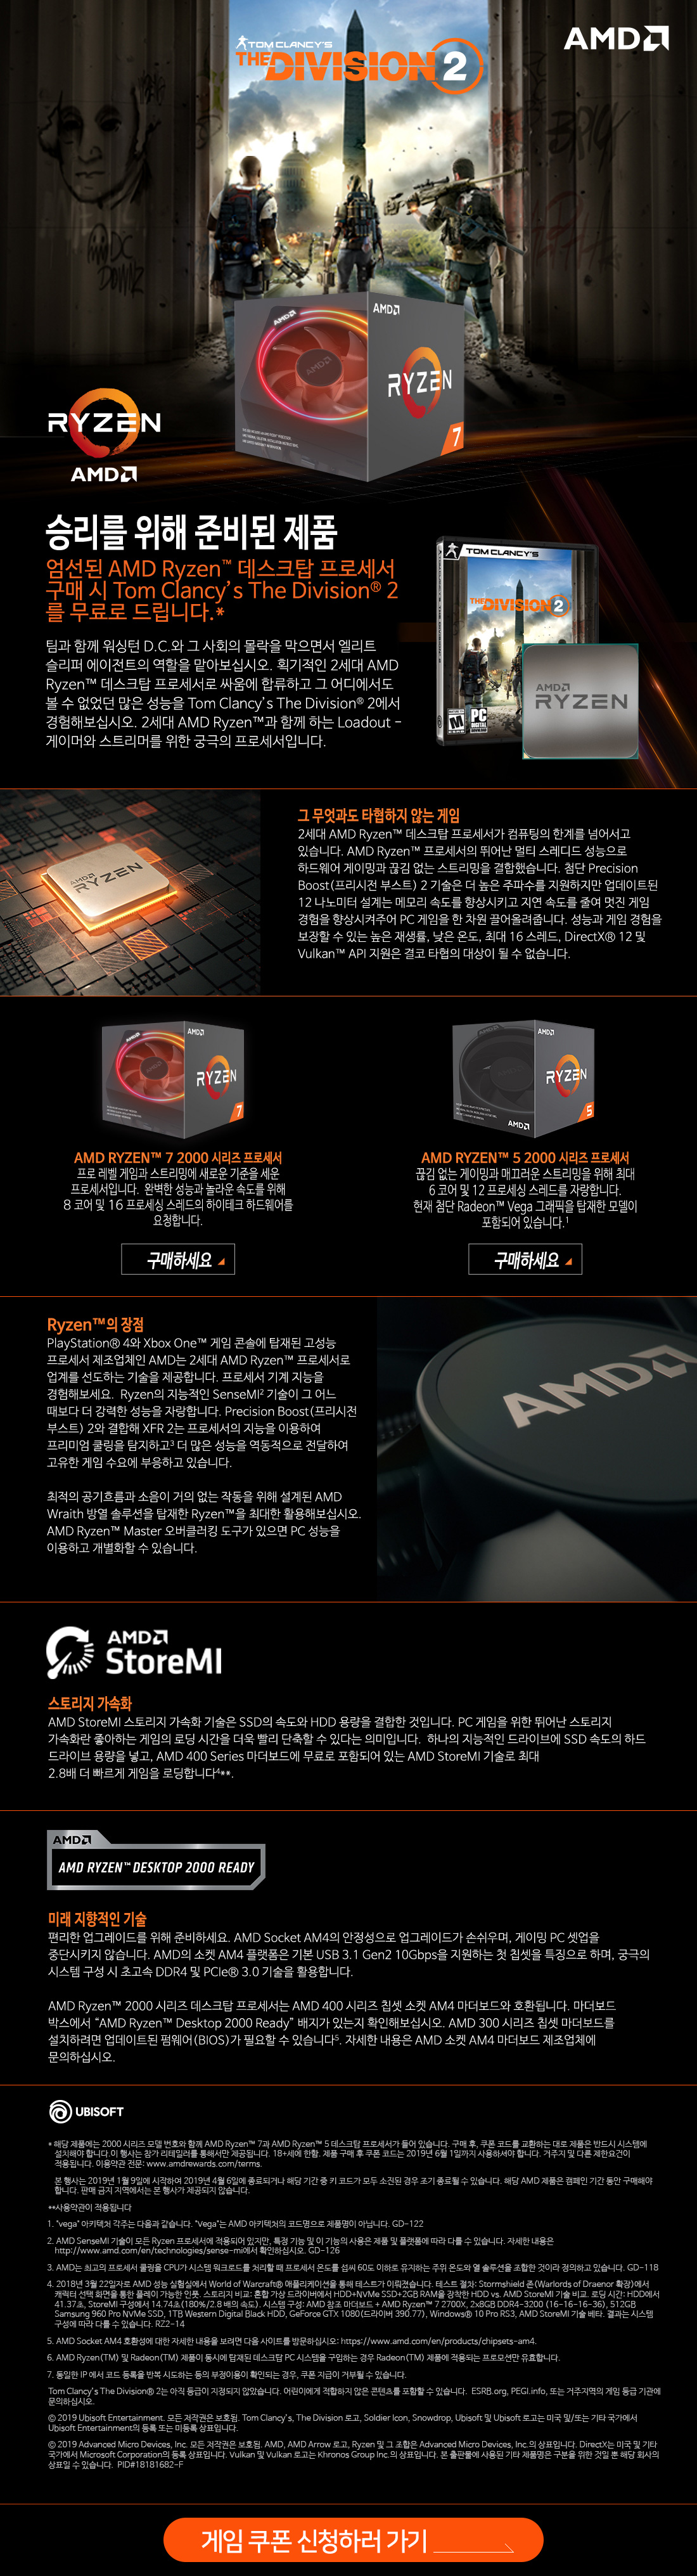 AMD ̹